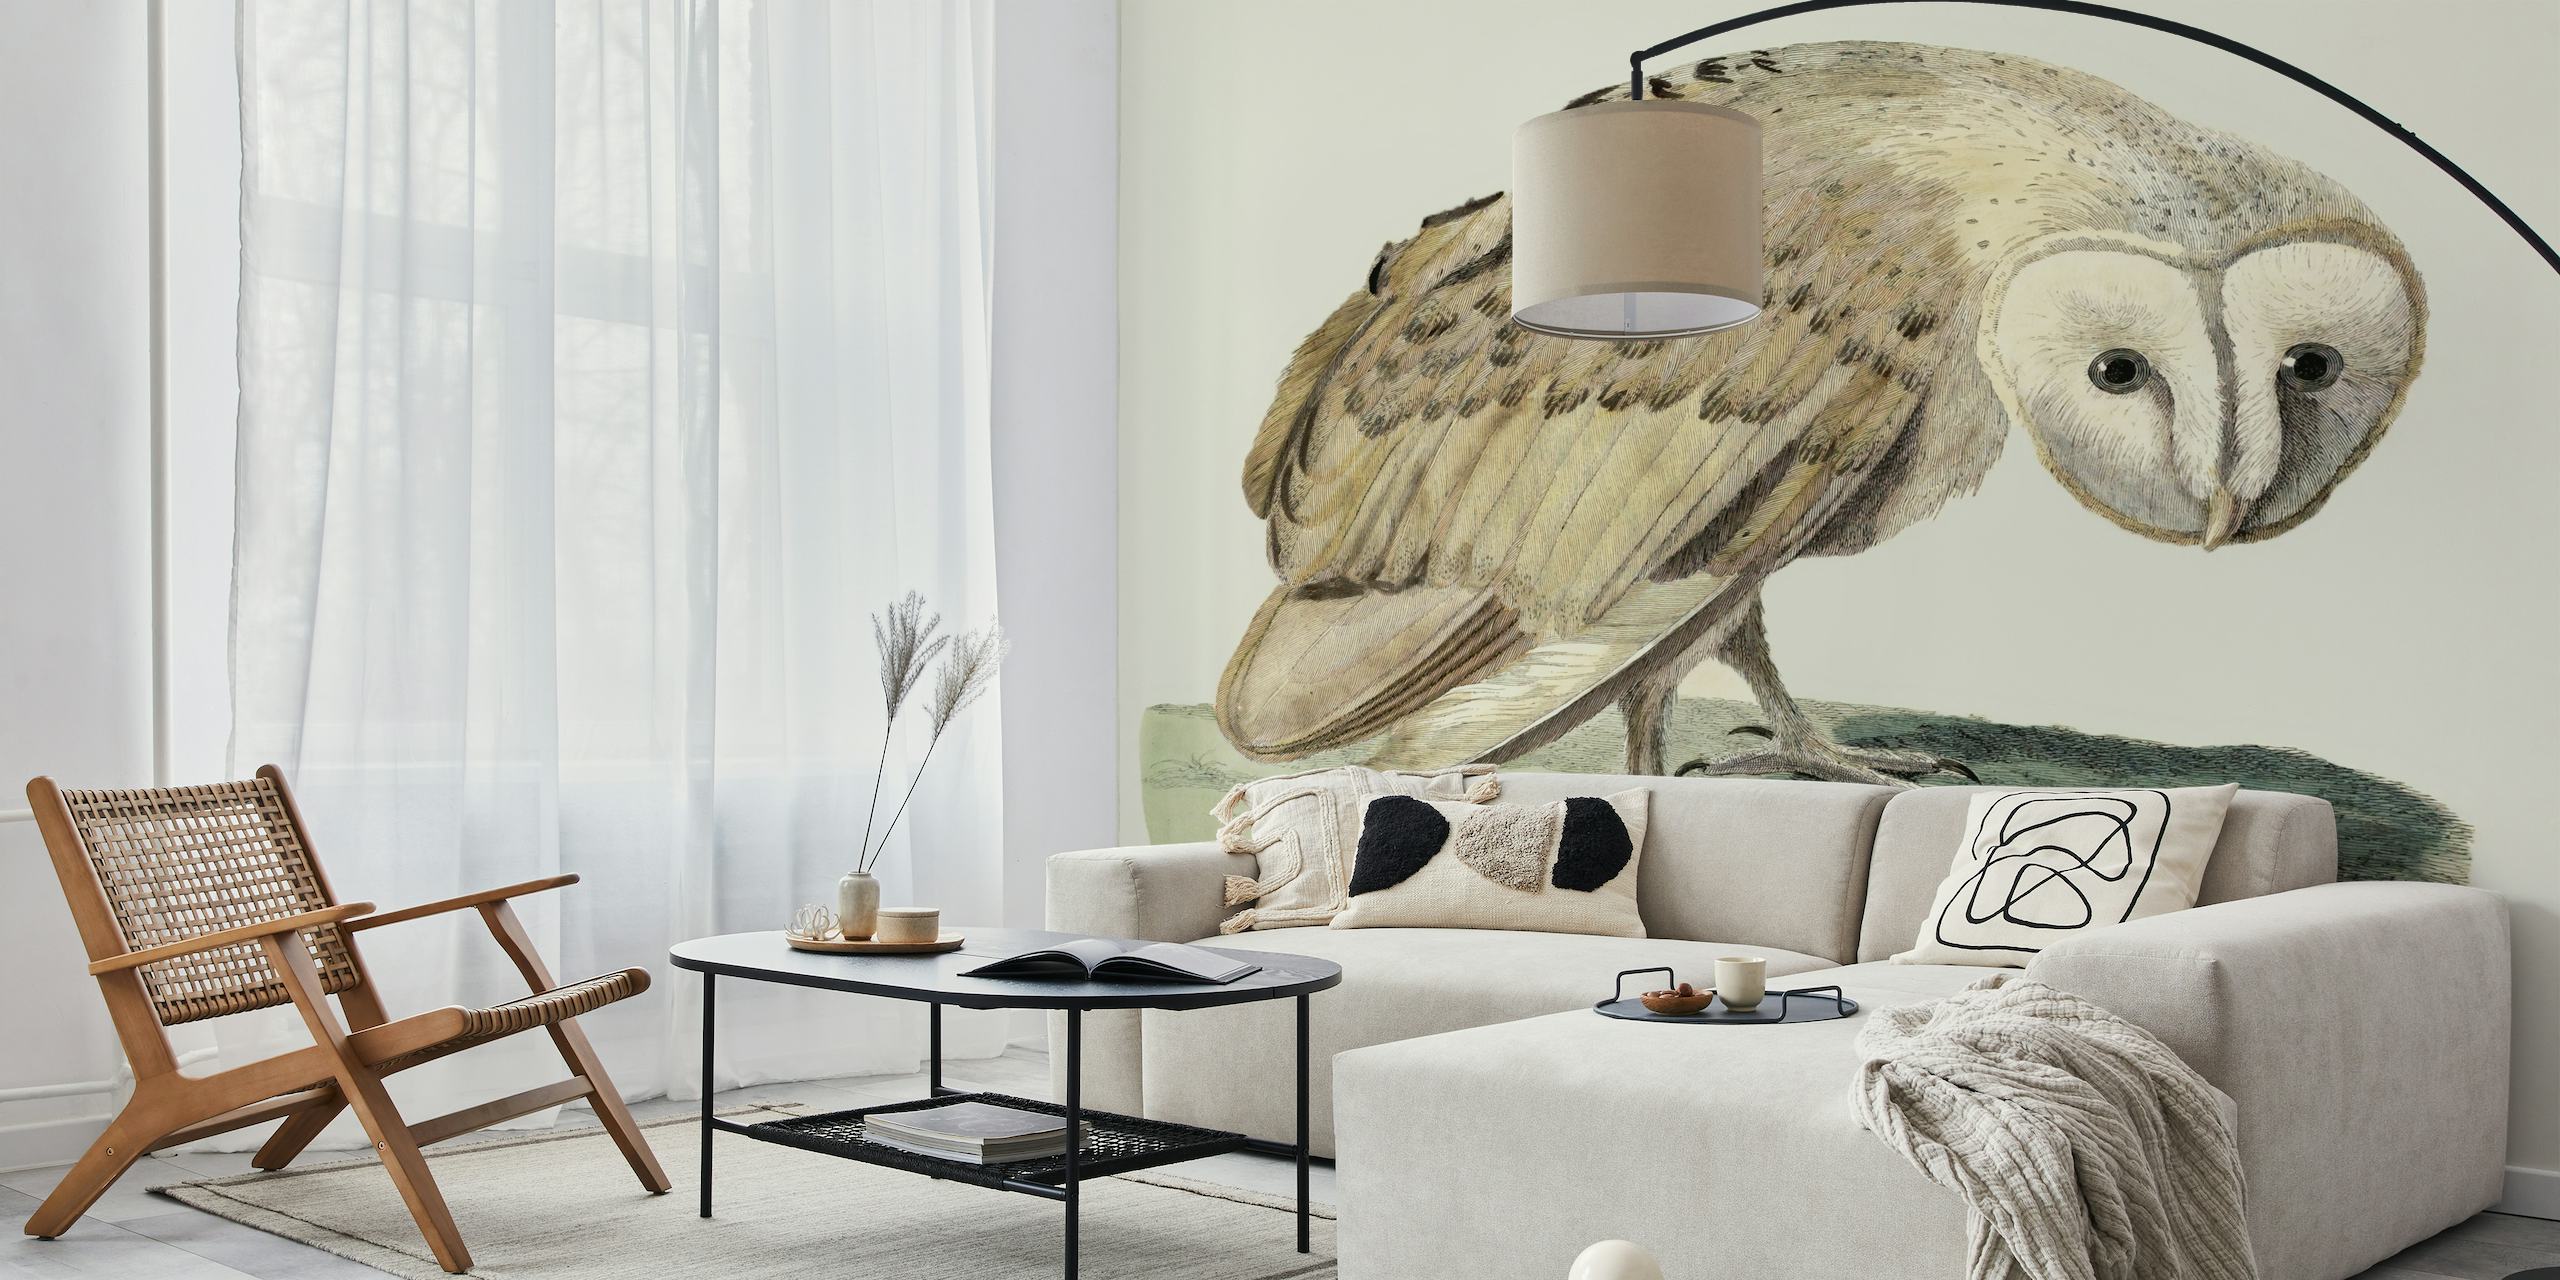 Muurschildering van witte uilen met een serene uitdrukking op een achtergrond in vintage-stijl.